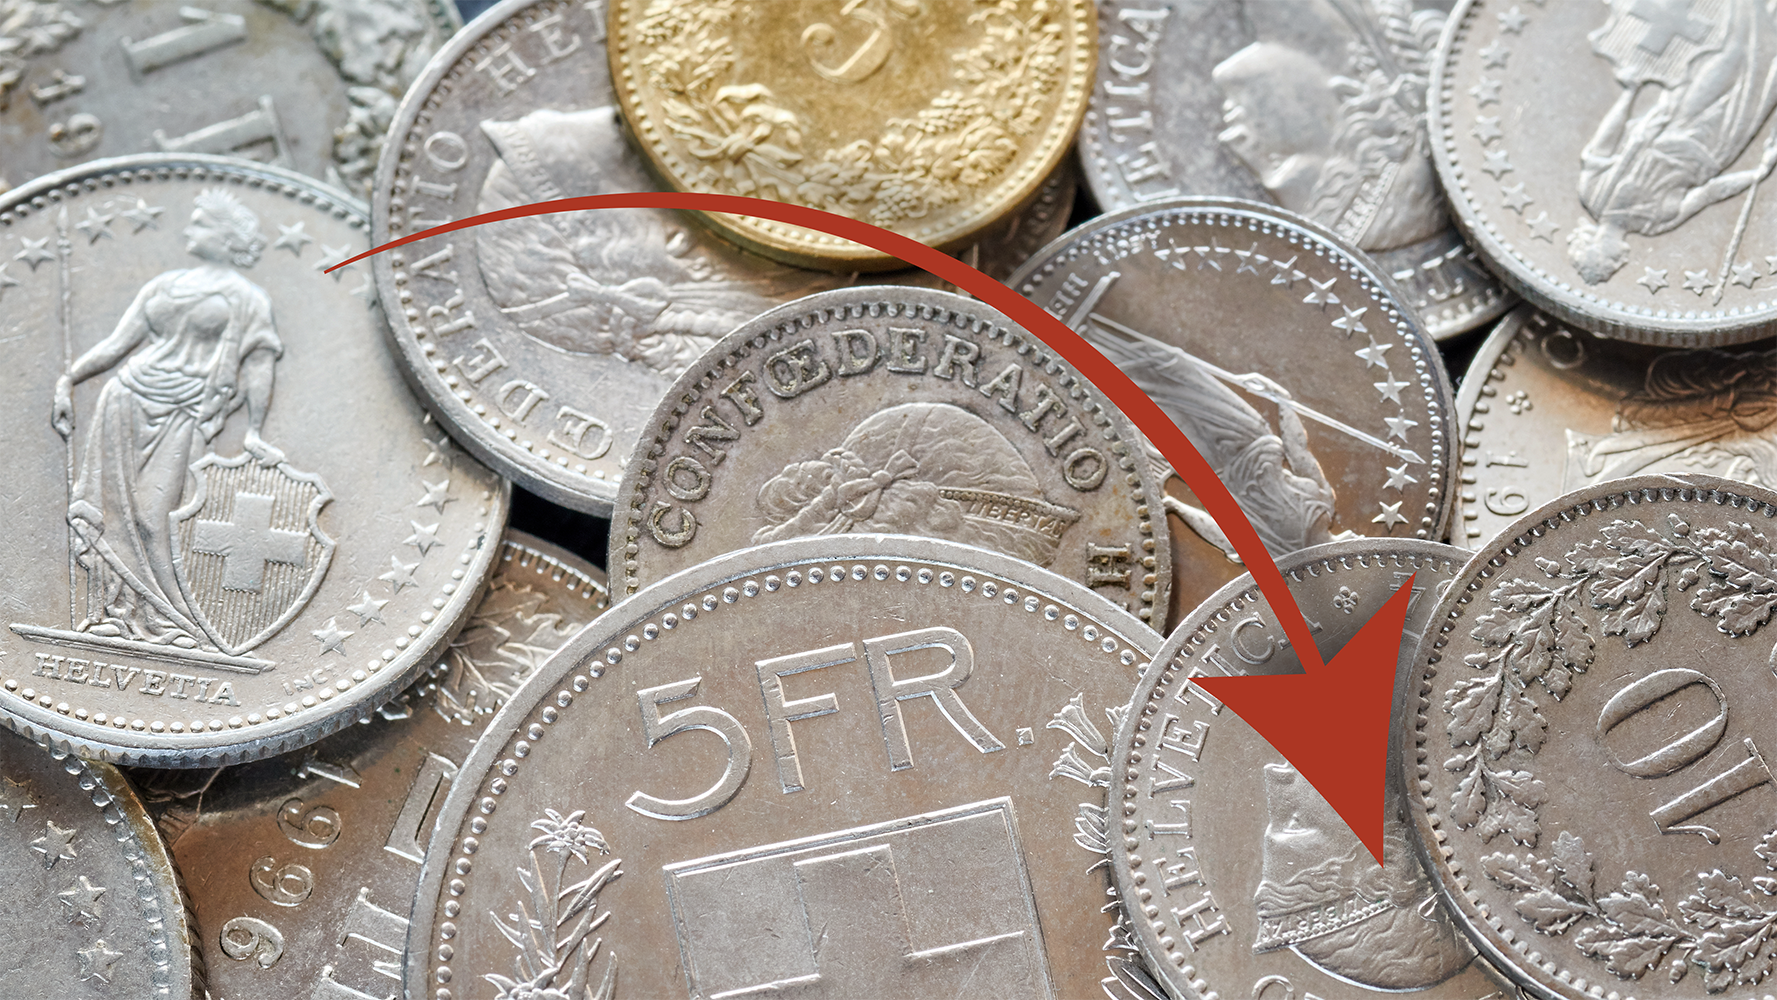 Image de pièces de monnaie devant lesquelles flotte une flèche vers le bas